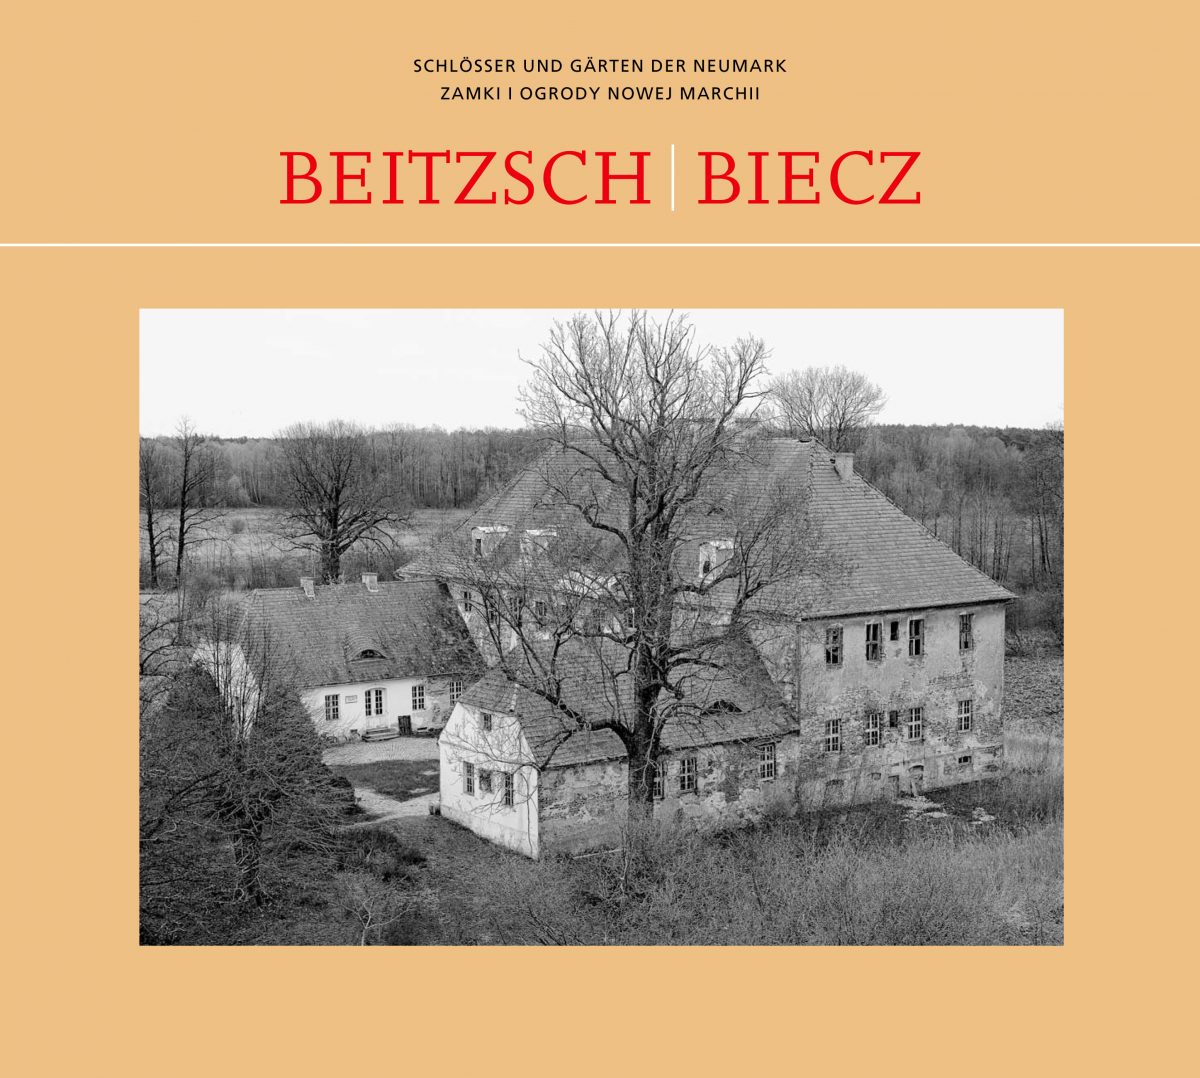 Schloss Beitzsch/Biecz